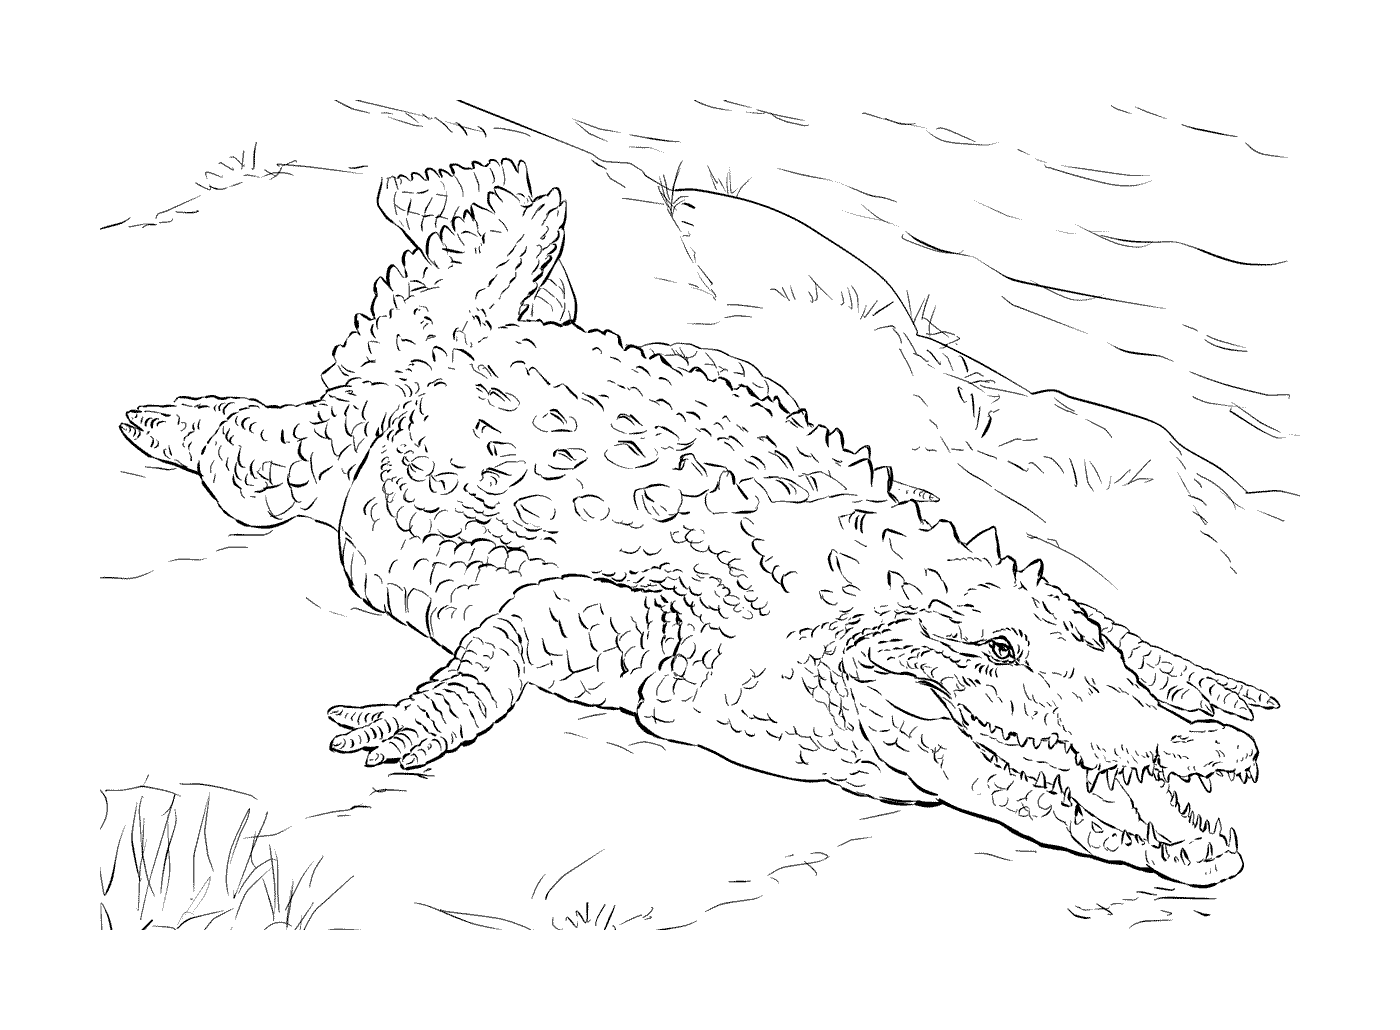  Американский крокодил, лежащий в траве 